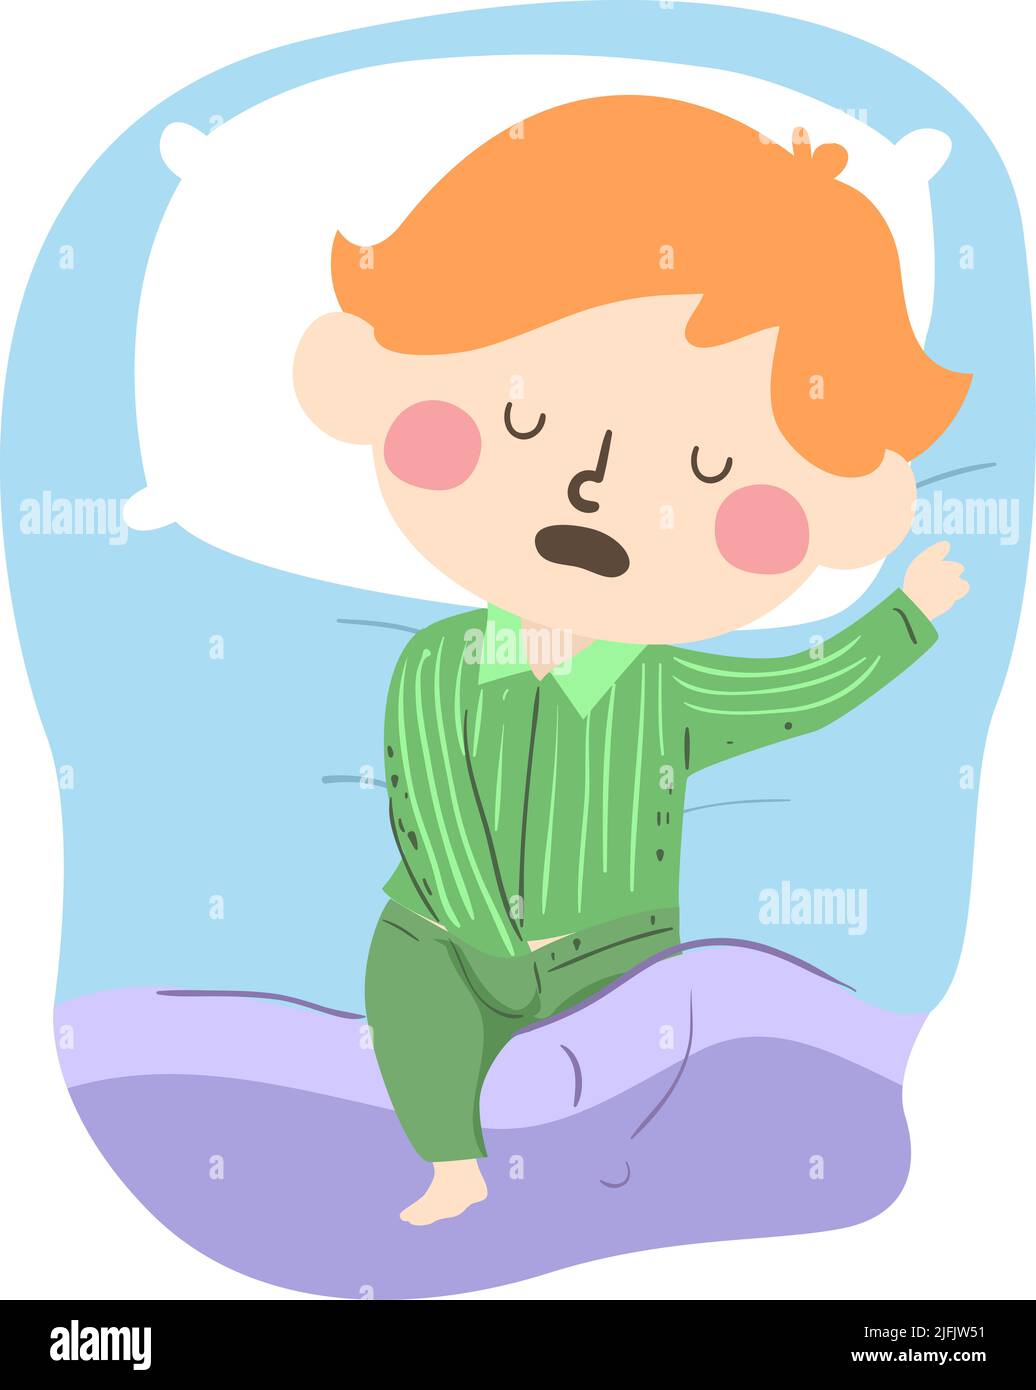 Ilustración de un niño acostado en la cama, tocando parte privada del cuerpo mientras duerme en la cama Foto de stock